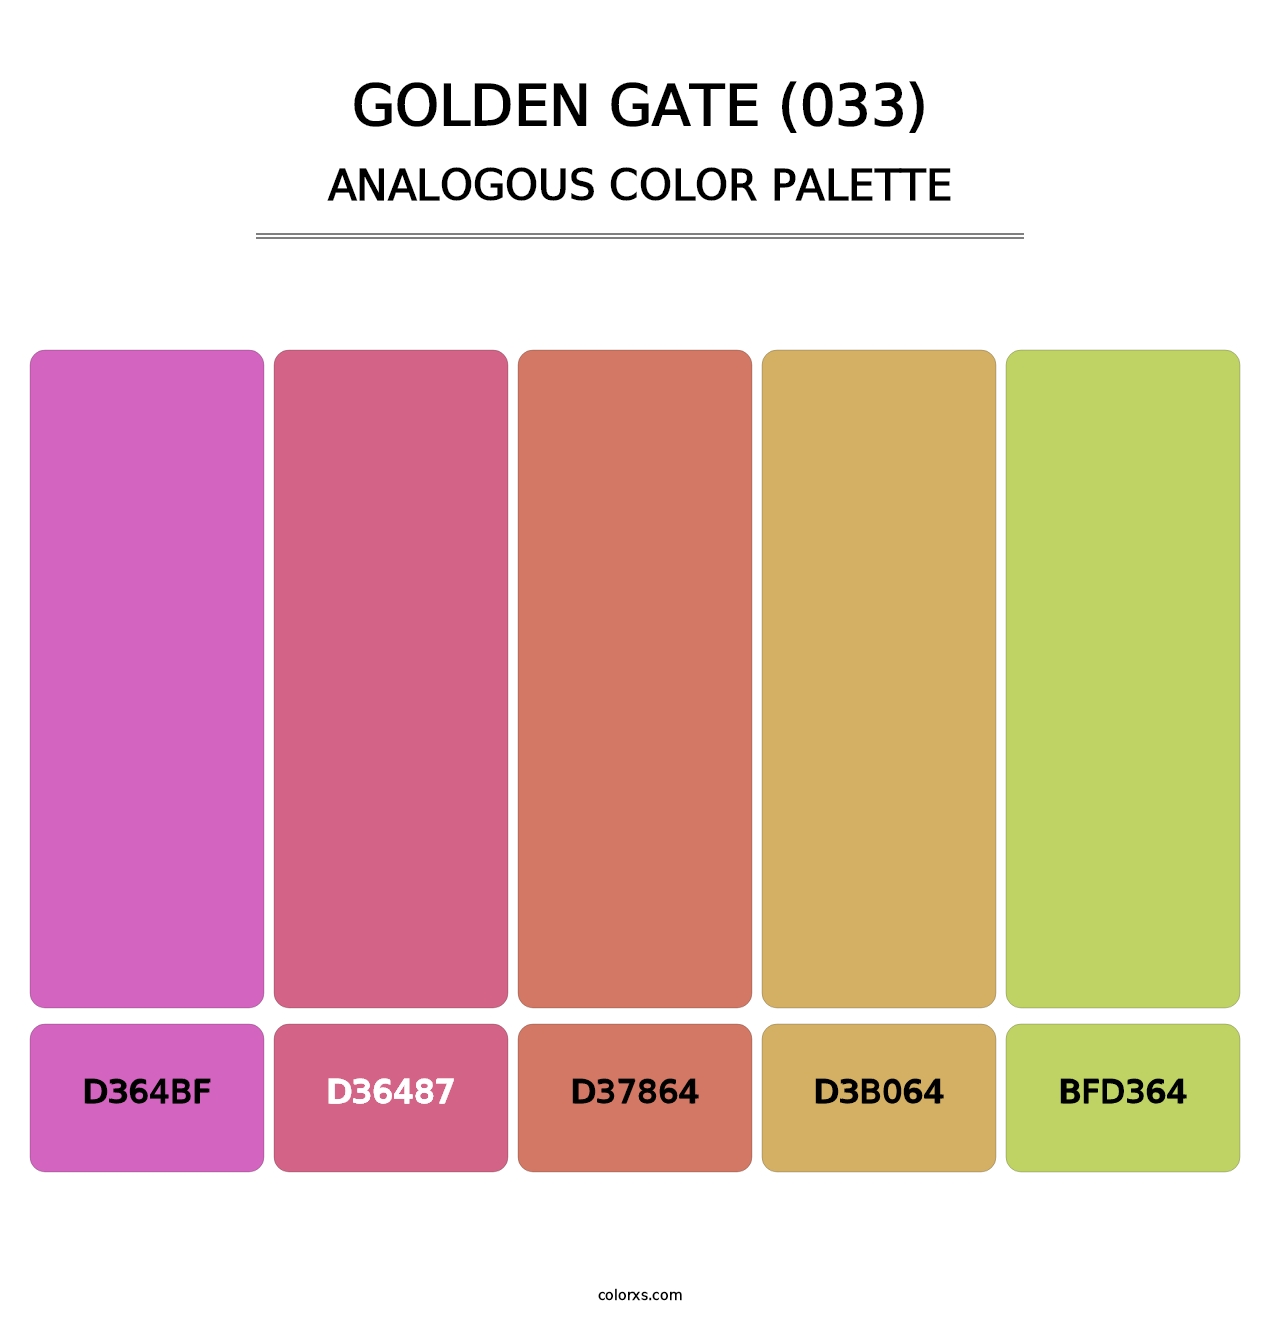 Golden Gate (033) - Analogous Color Palette